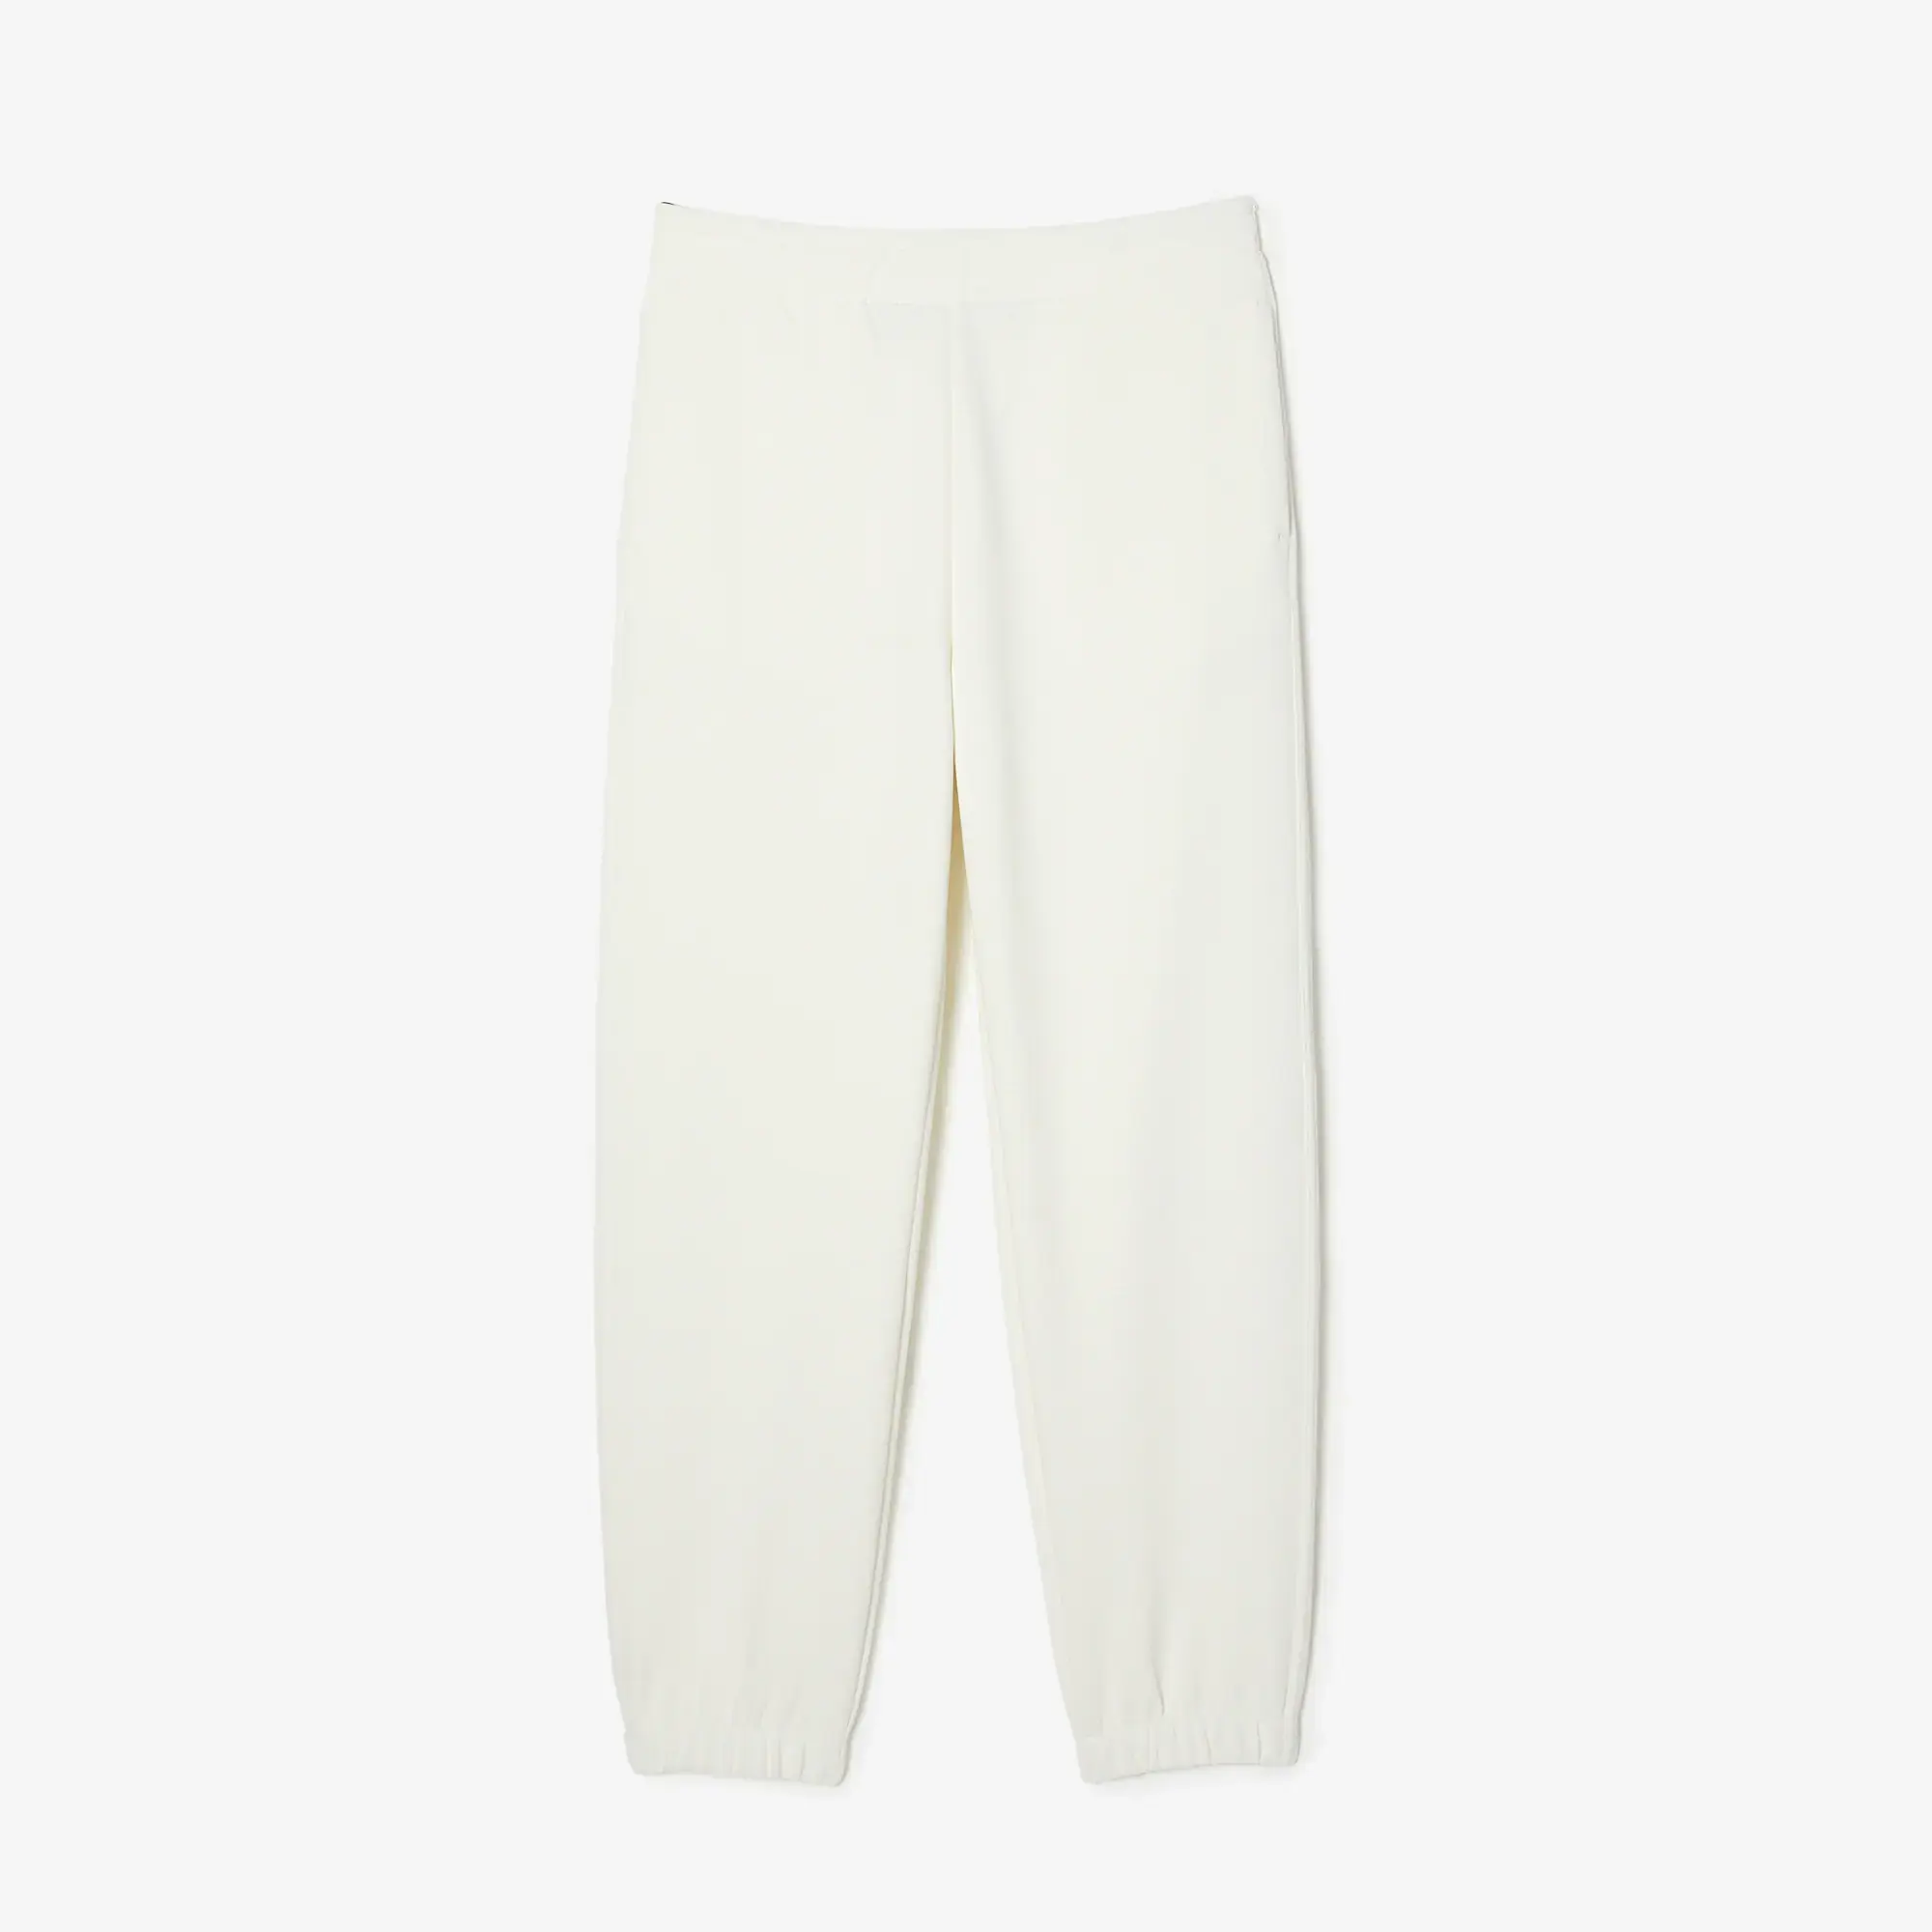 Lacoste Women’s Blended Cotton Sweatpants. 2